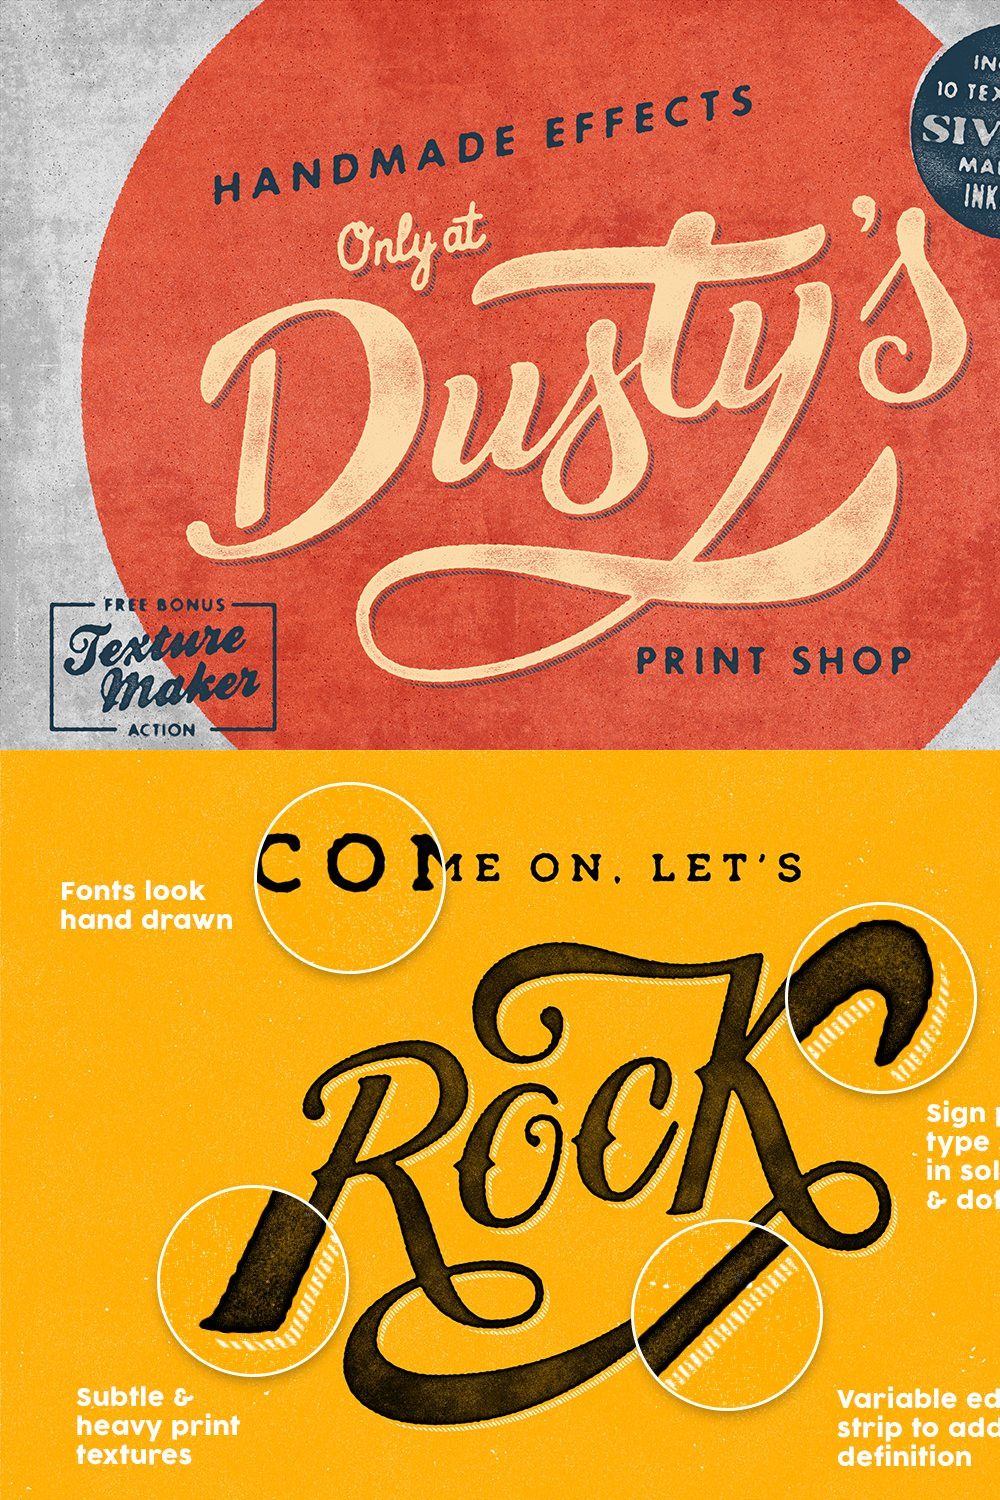 Dusty's Print Shop pinterest preview image.